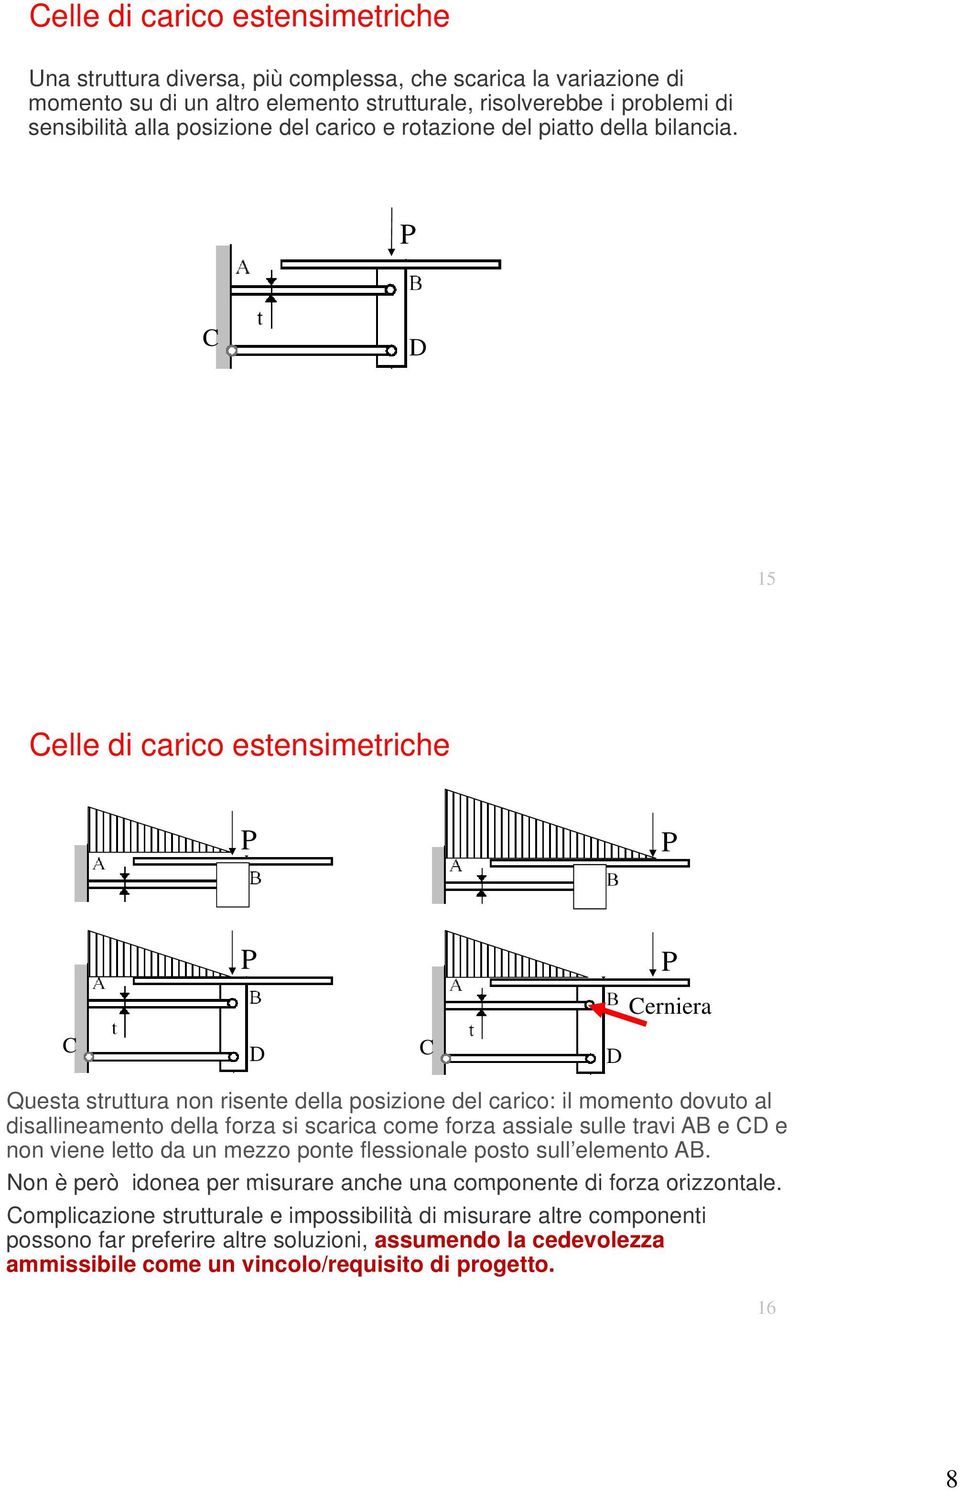 C D 15 Celle di carico estensimetriche Cerniera C D C D Questa struttura non risente della posizione del carico: il momento dovuto al disallineamento della forza si scarica come forza assiale sulle